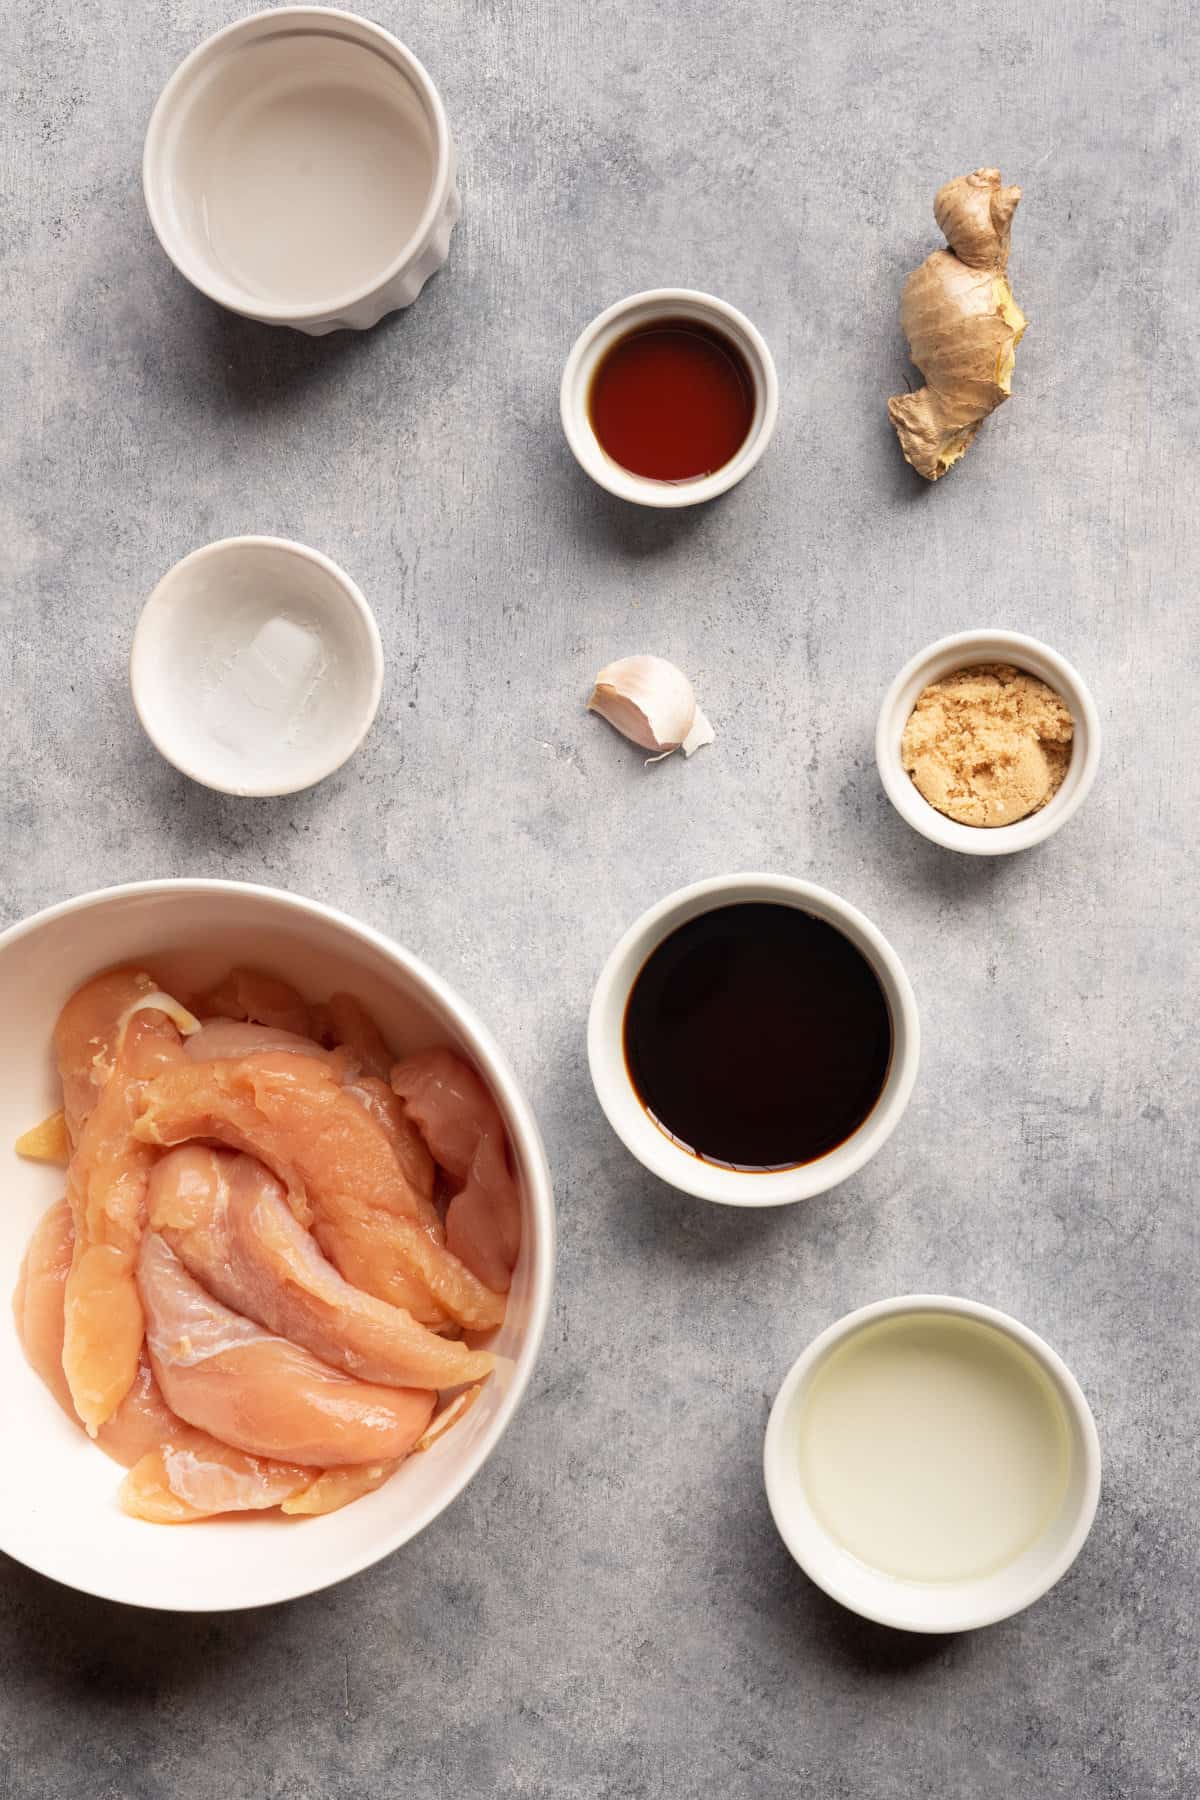 Ingredients to make teriyaki chicken tenders from scratch.